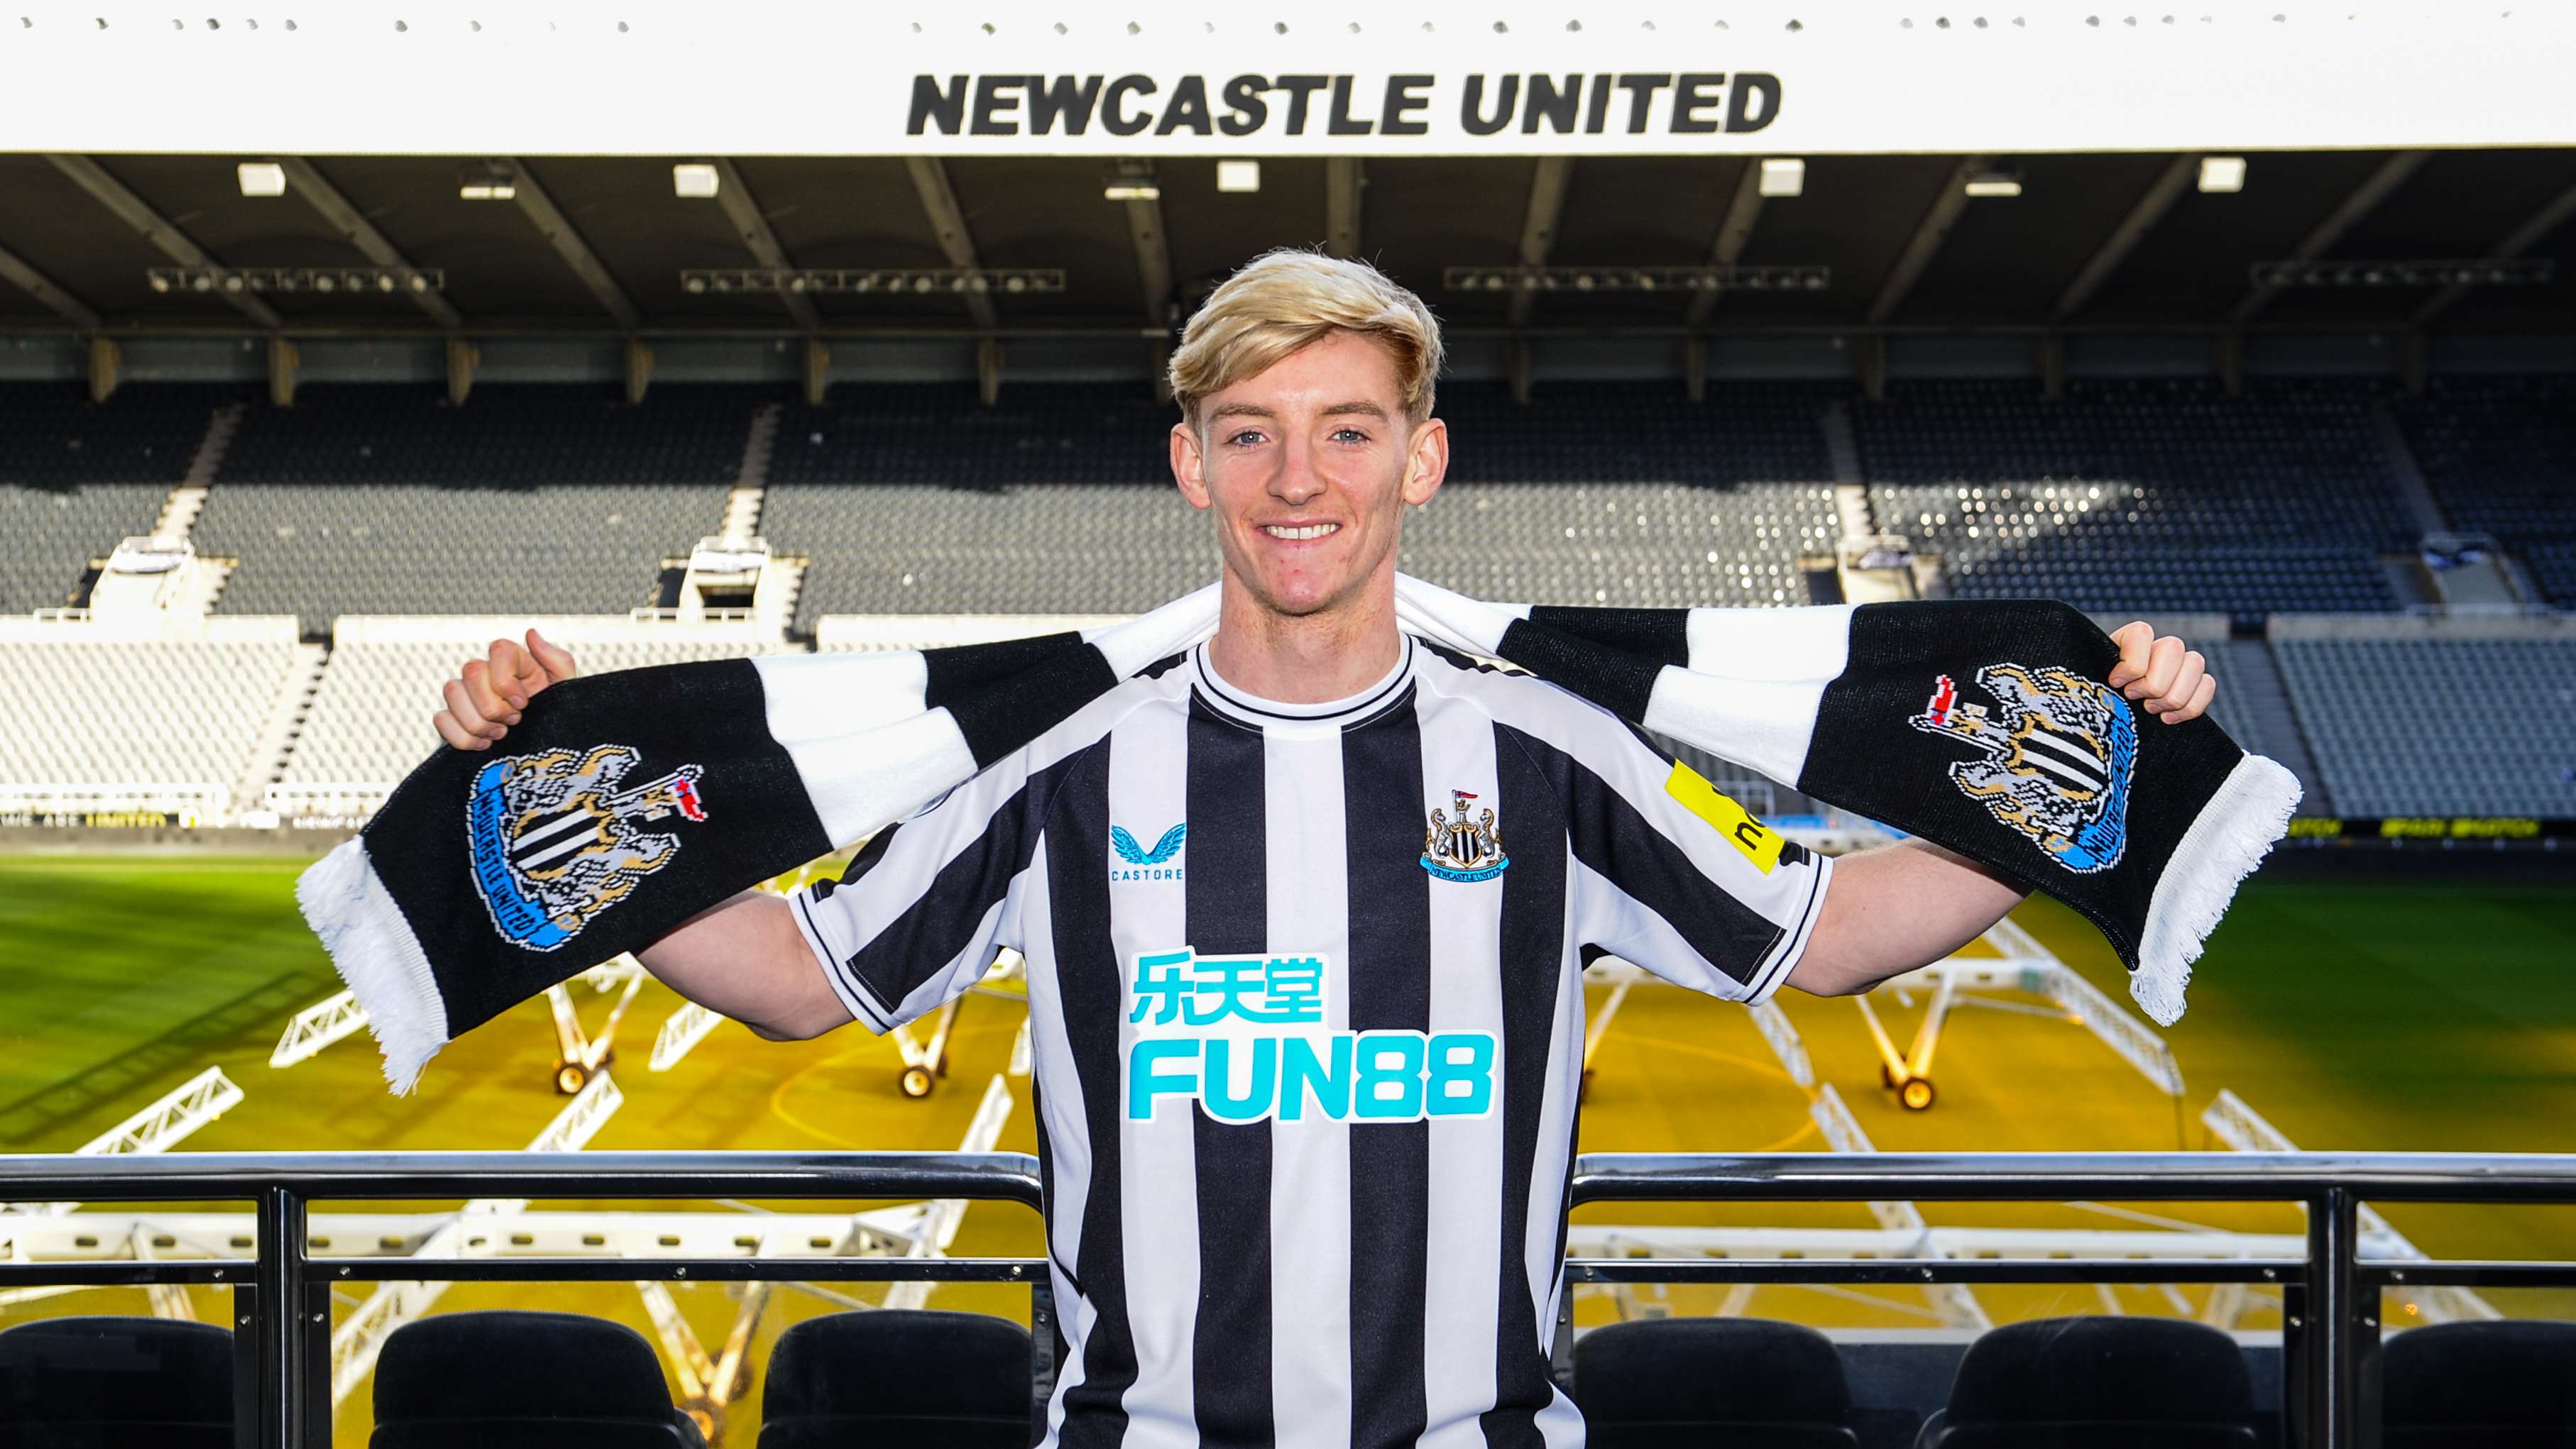 Newcastle United - Newcastle United sign Anthony Gordon